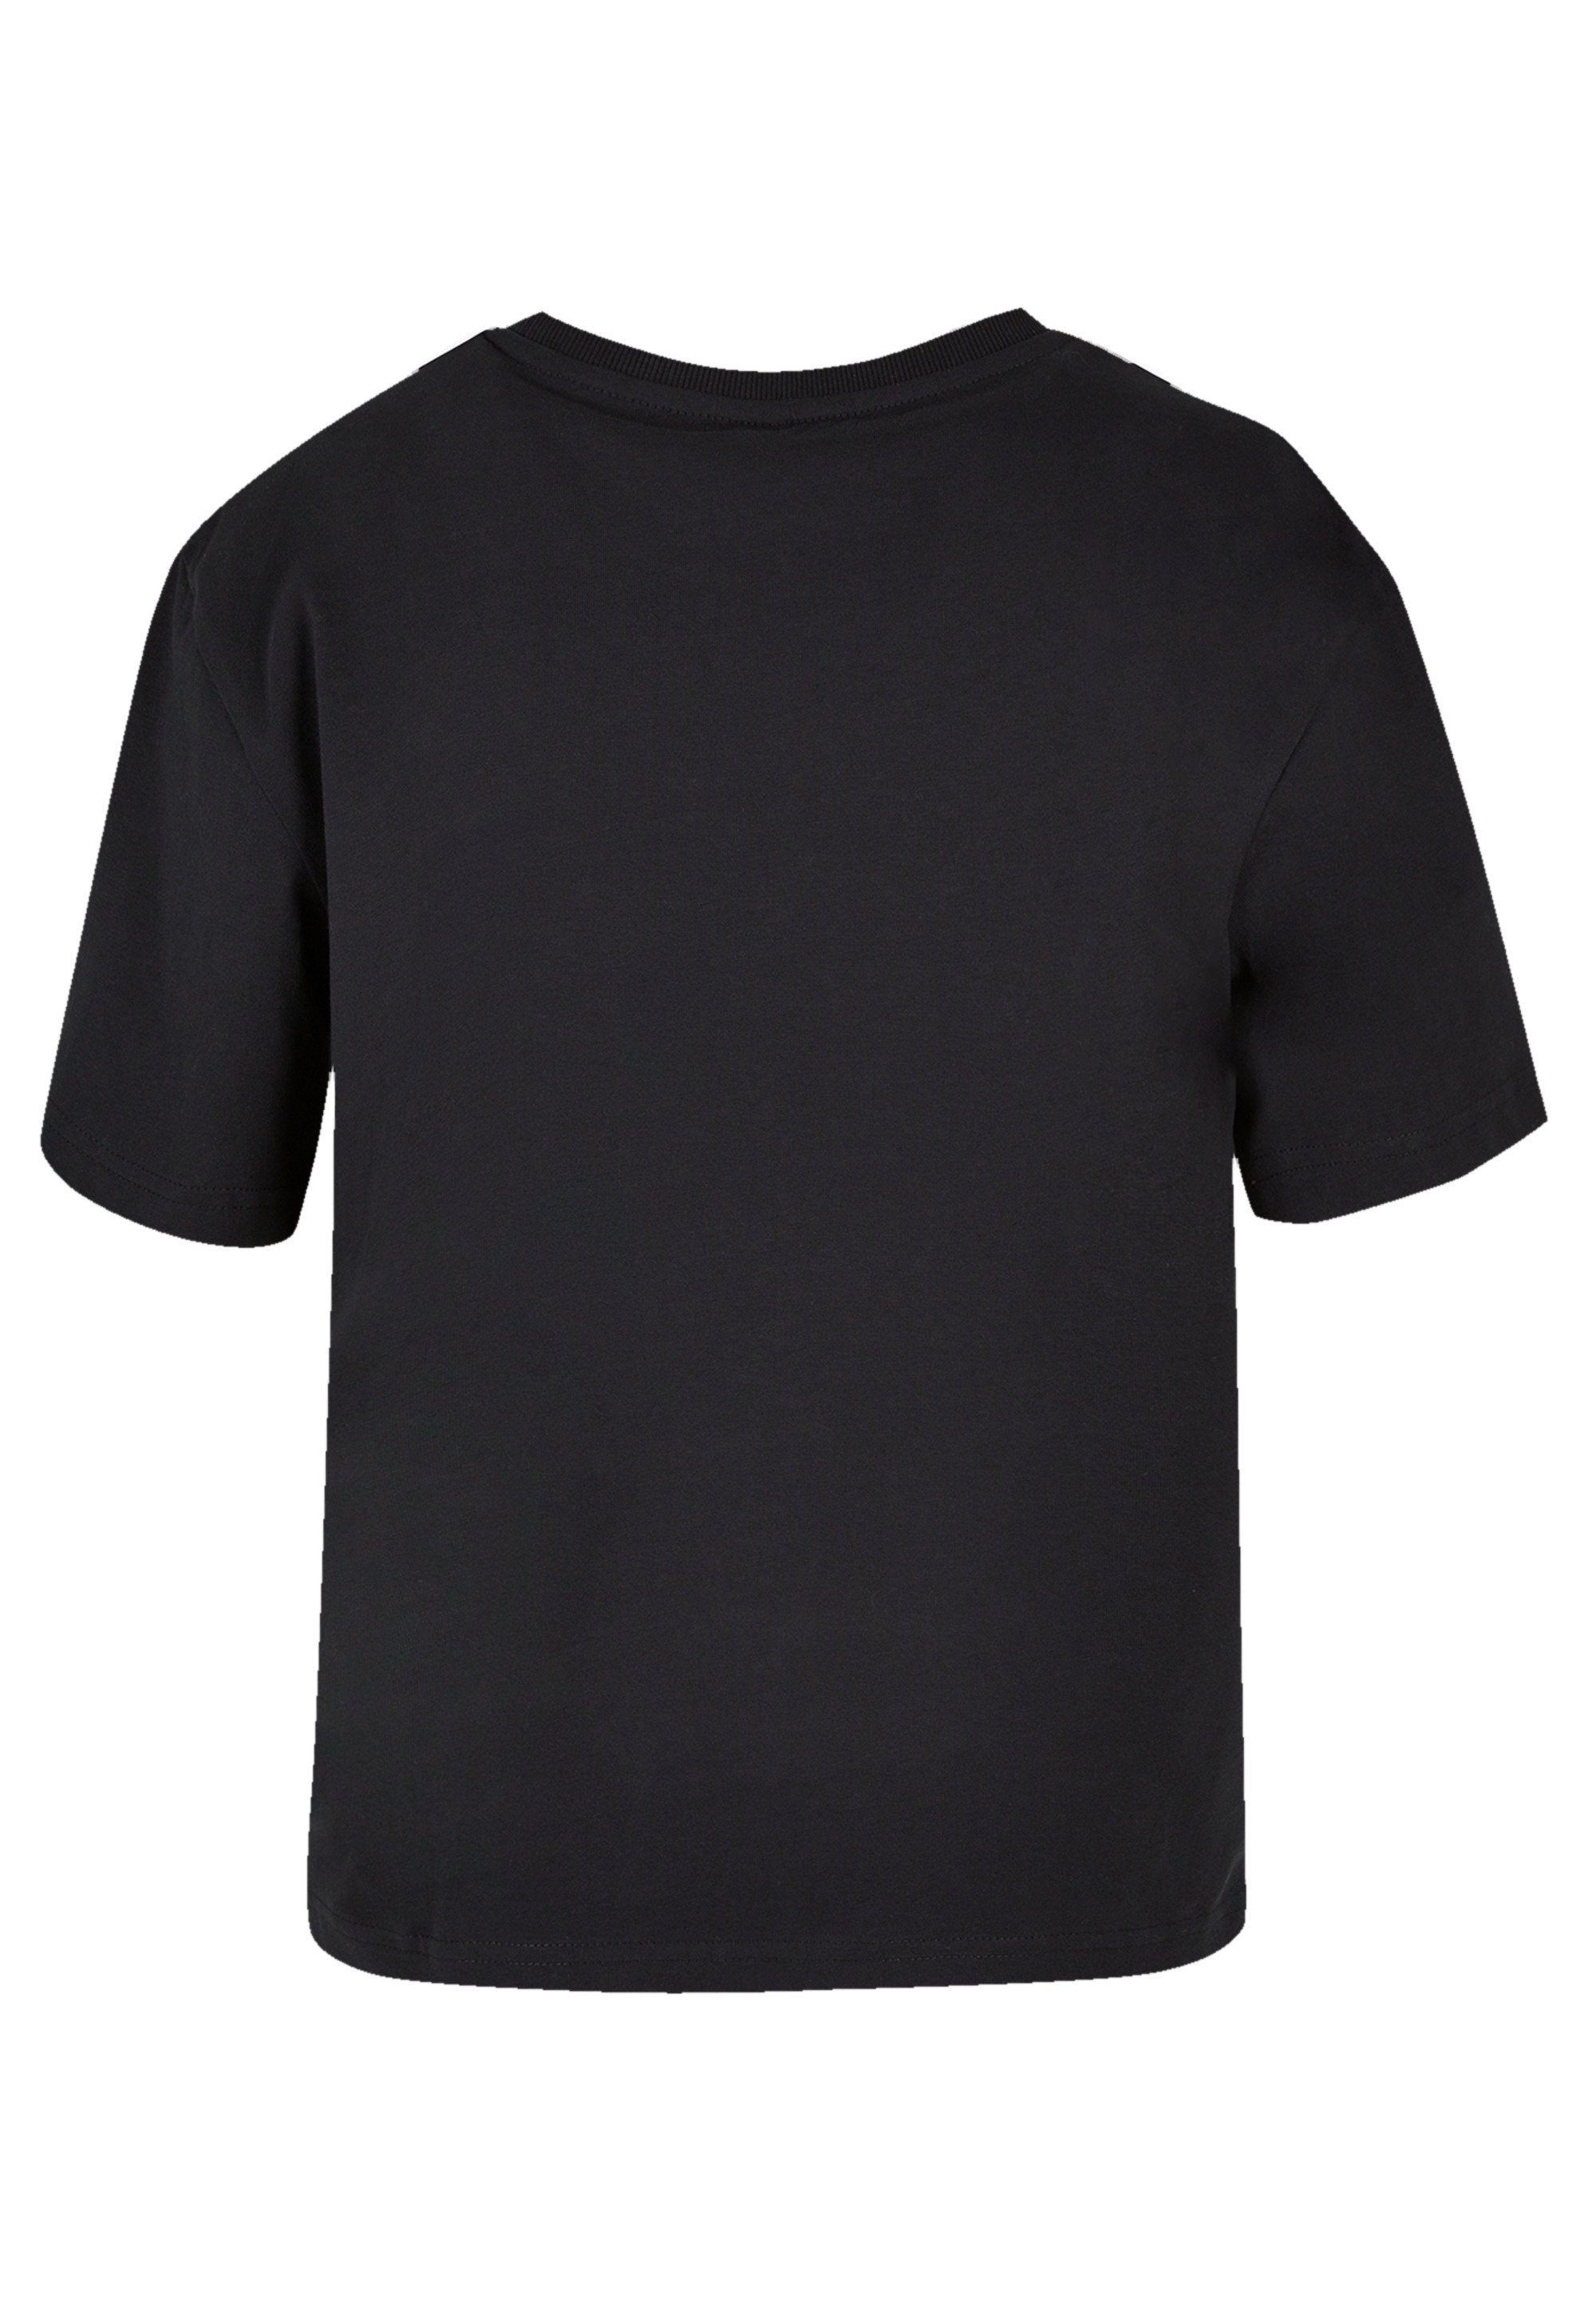 Bold Qualität, Premium kombinierbar und Komfortabel Spirit F4NT4STIC T-Shirt Mulan vielseitig Disney